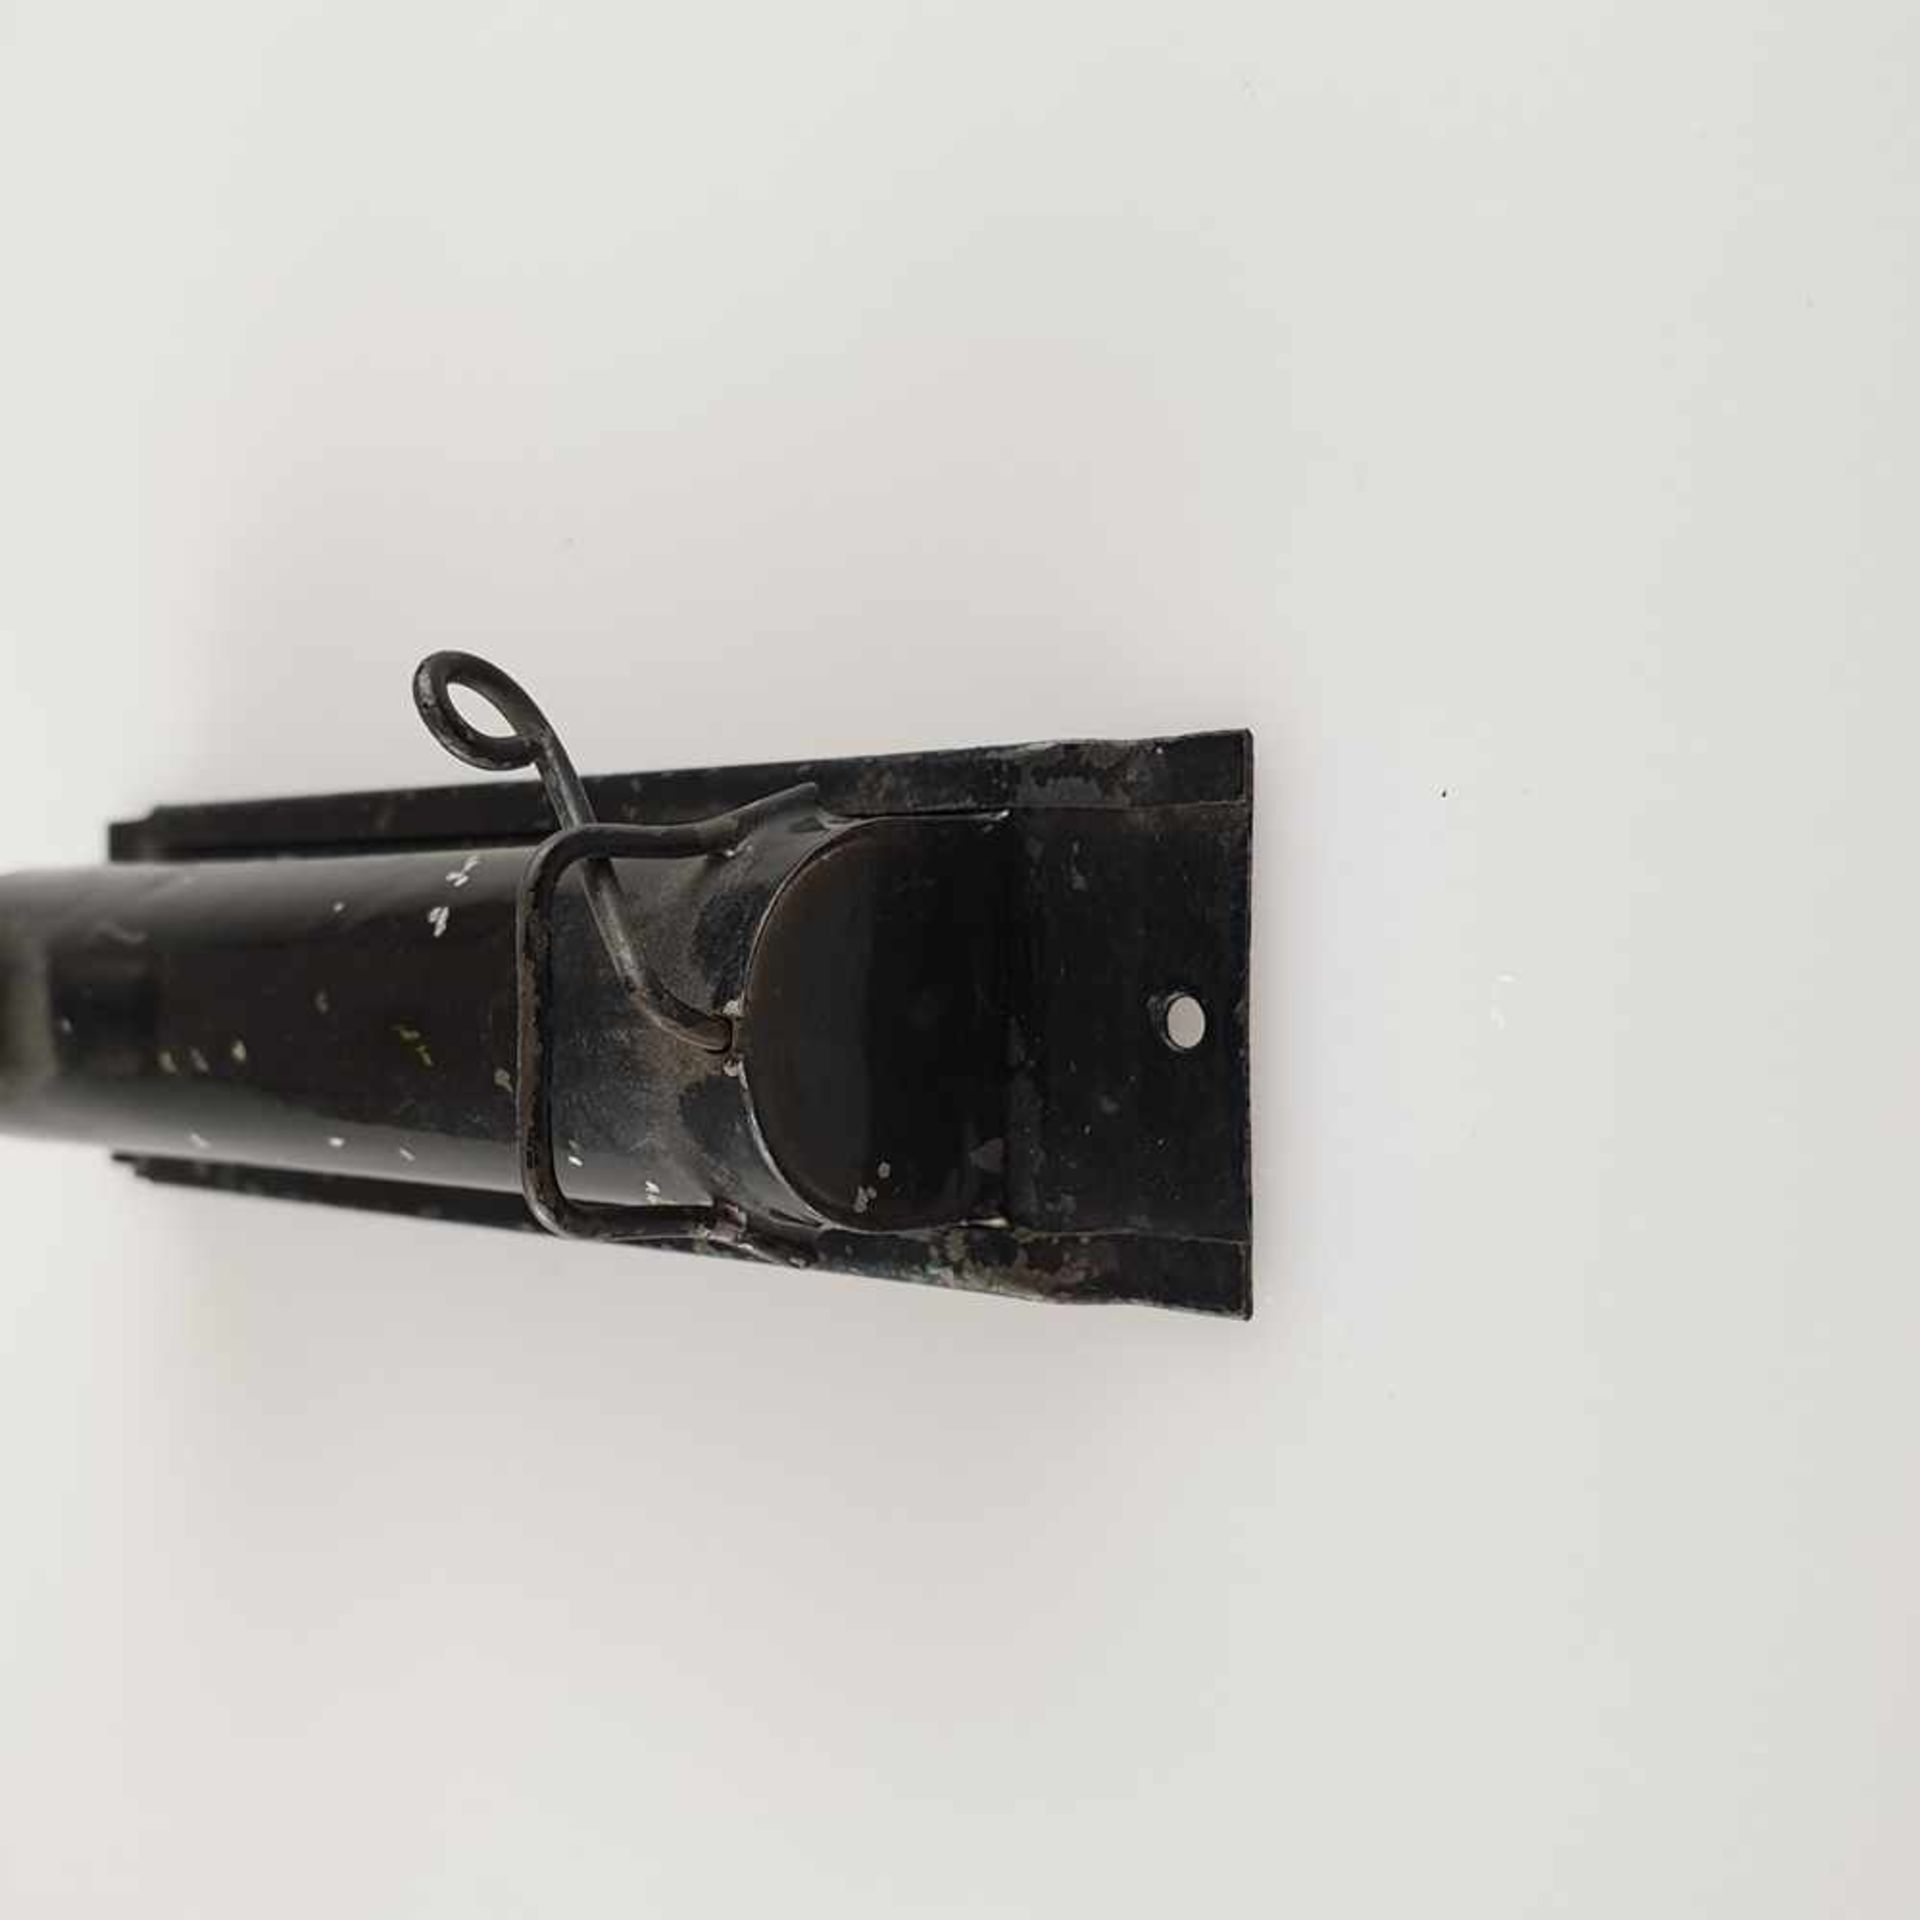 Batterie-Lampe - Metallkorpus, schwarz gefasst, Entwurf wohl Marianne Brandt, Alters- und - Bild 5 aus 6